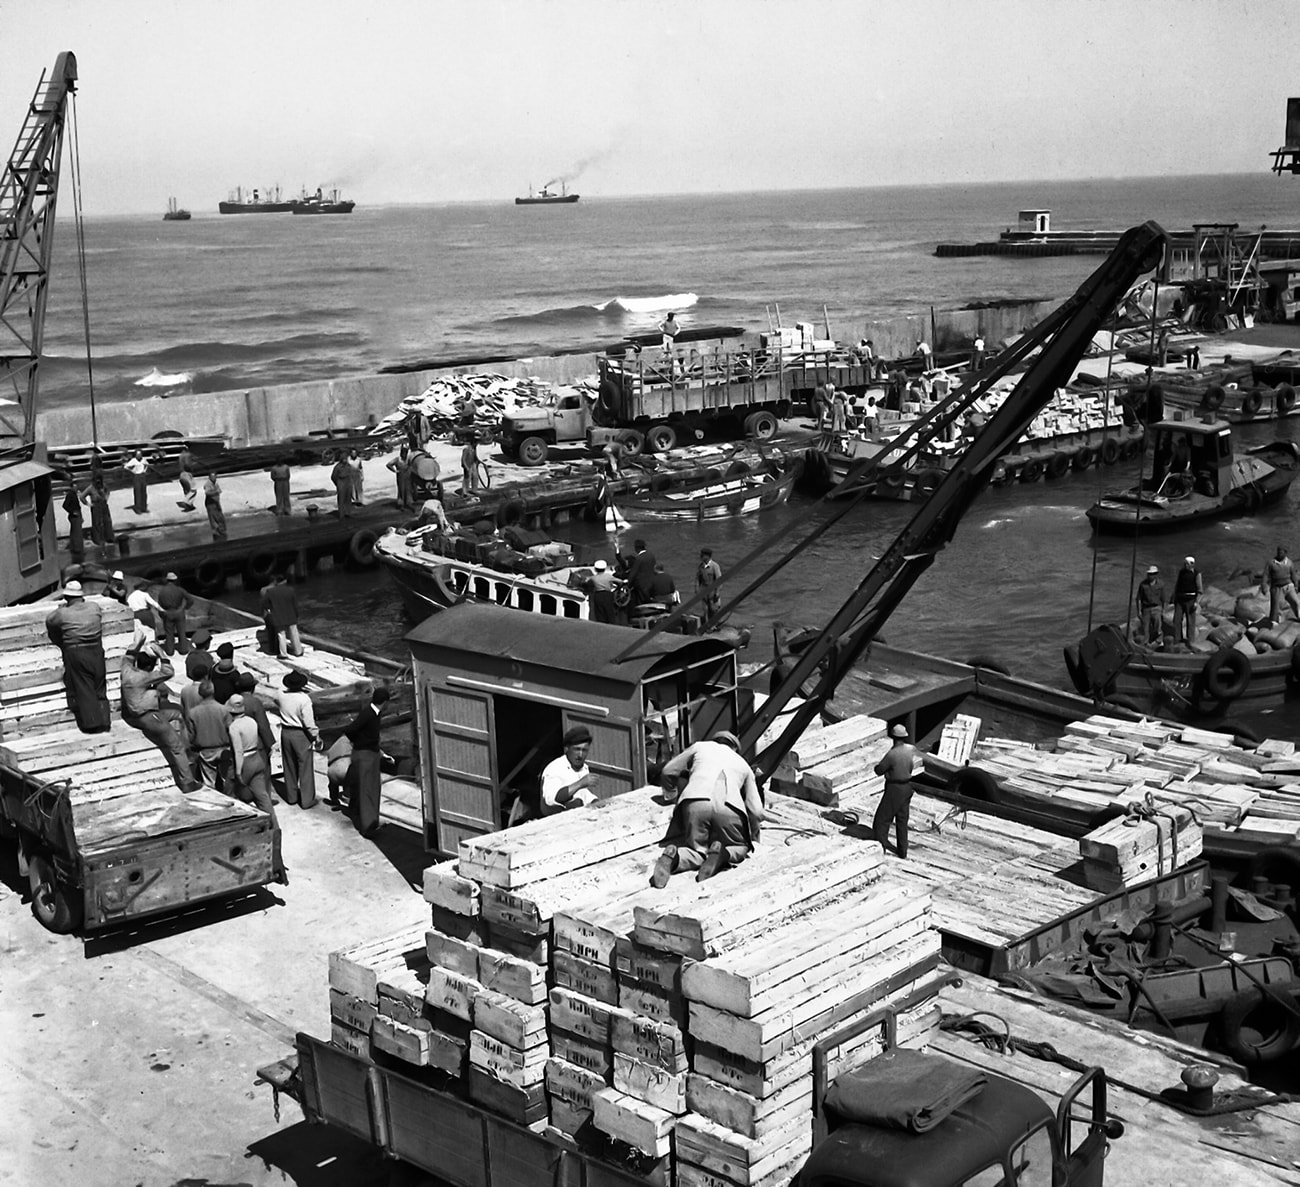 Carregando sacos no cais do porto de Tel Aviv, 1936